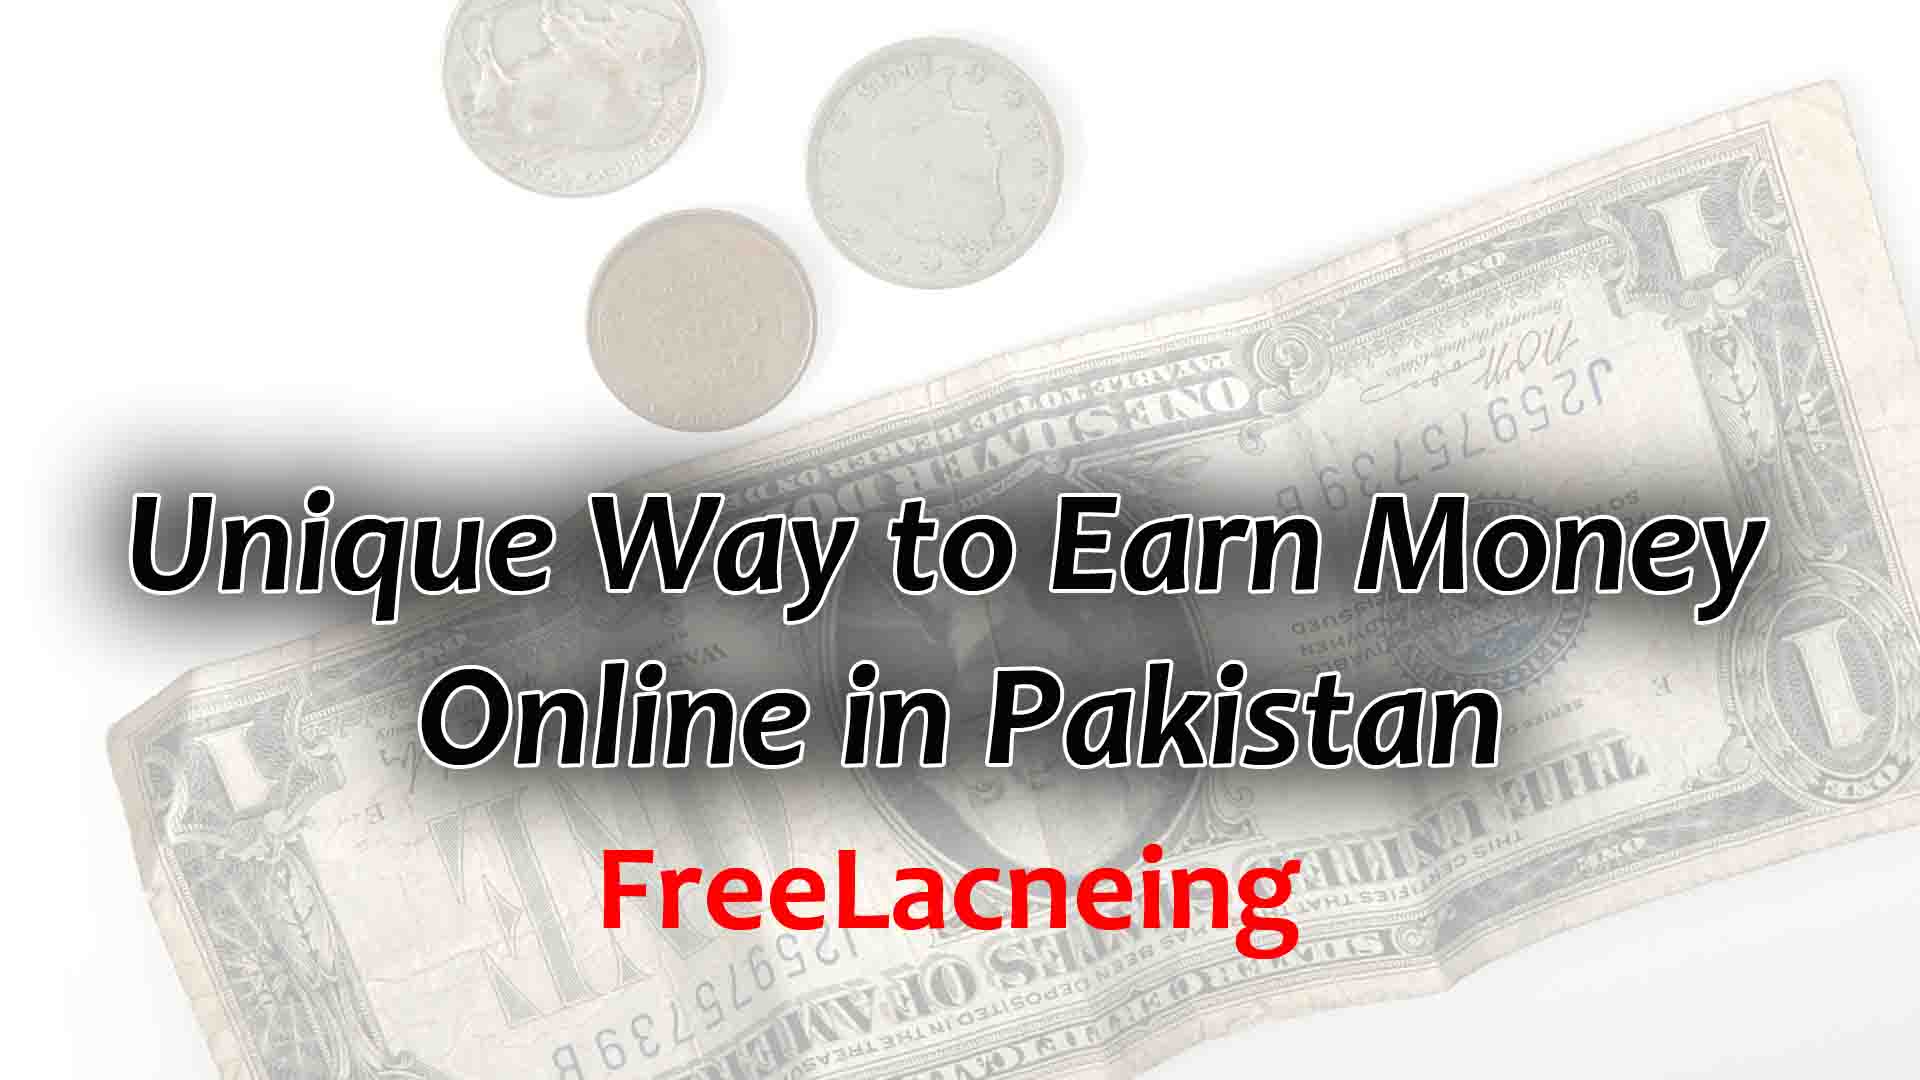 Unique Way to Earn Money Online in Pakistan